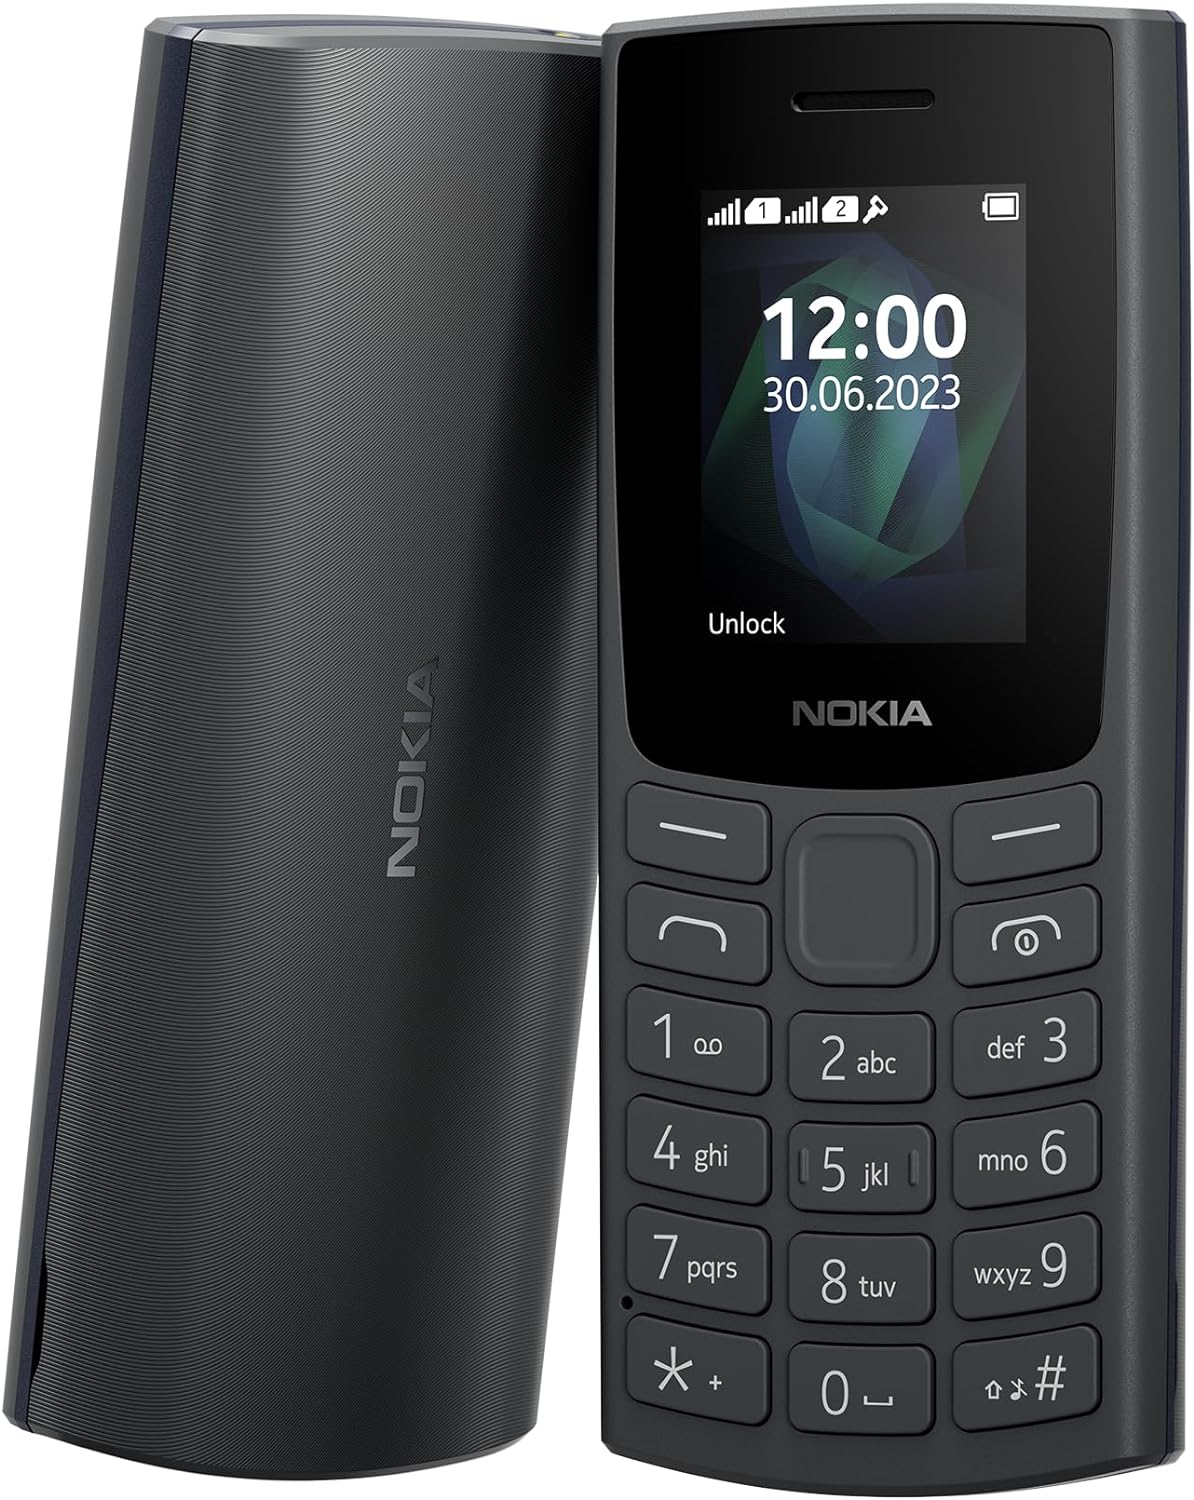 Image of Nokia 105 2023 Telefono Cellulare Dual Sim, Display 1.8 a colori, Carbone (Charcoal) [Italia]